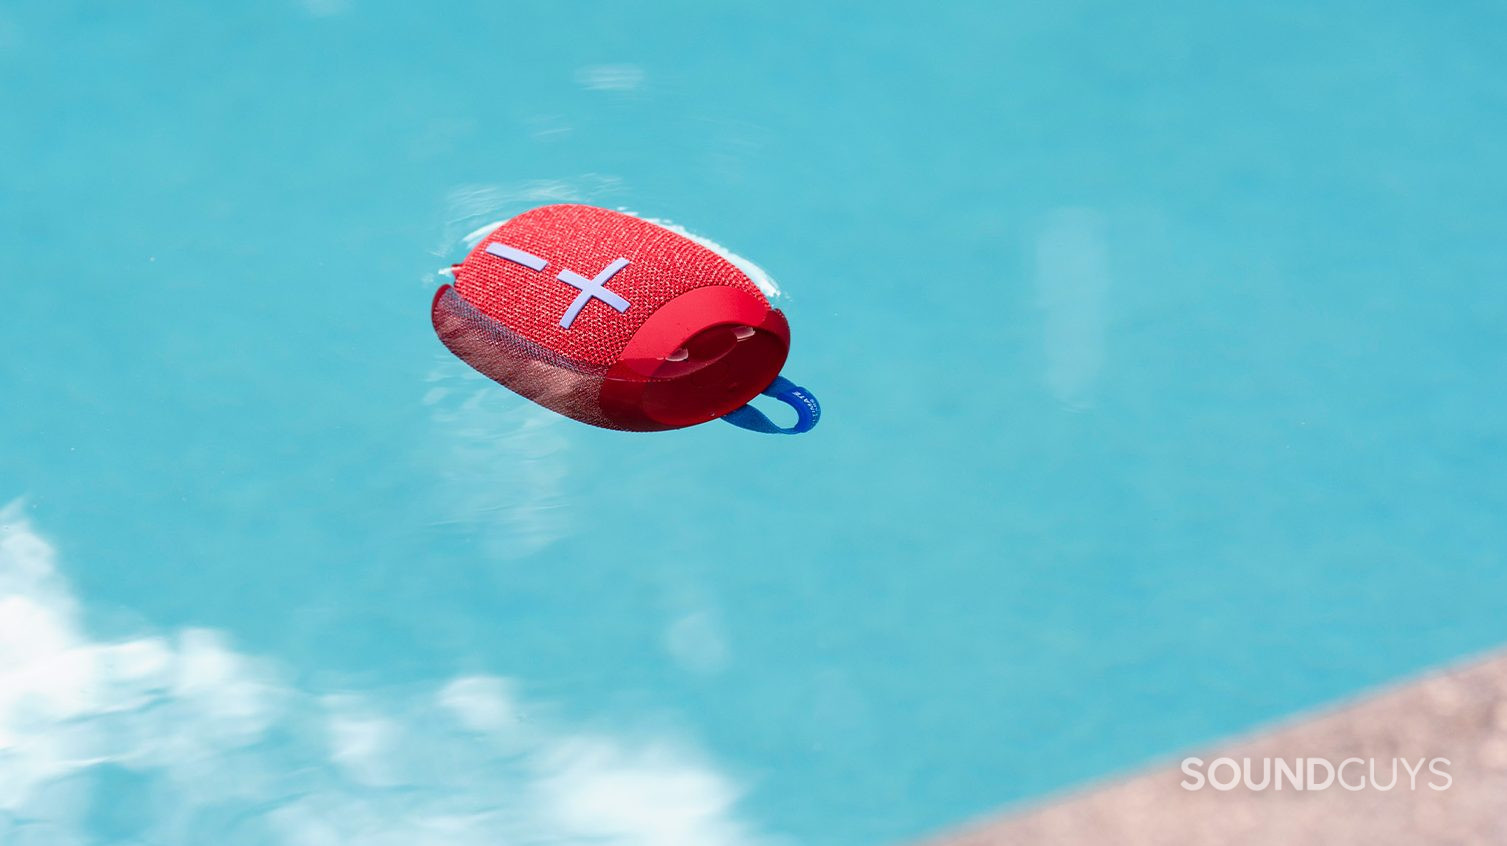 UE Wonderboom 2 floating in a pool. The speaker is in red.